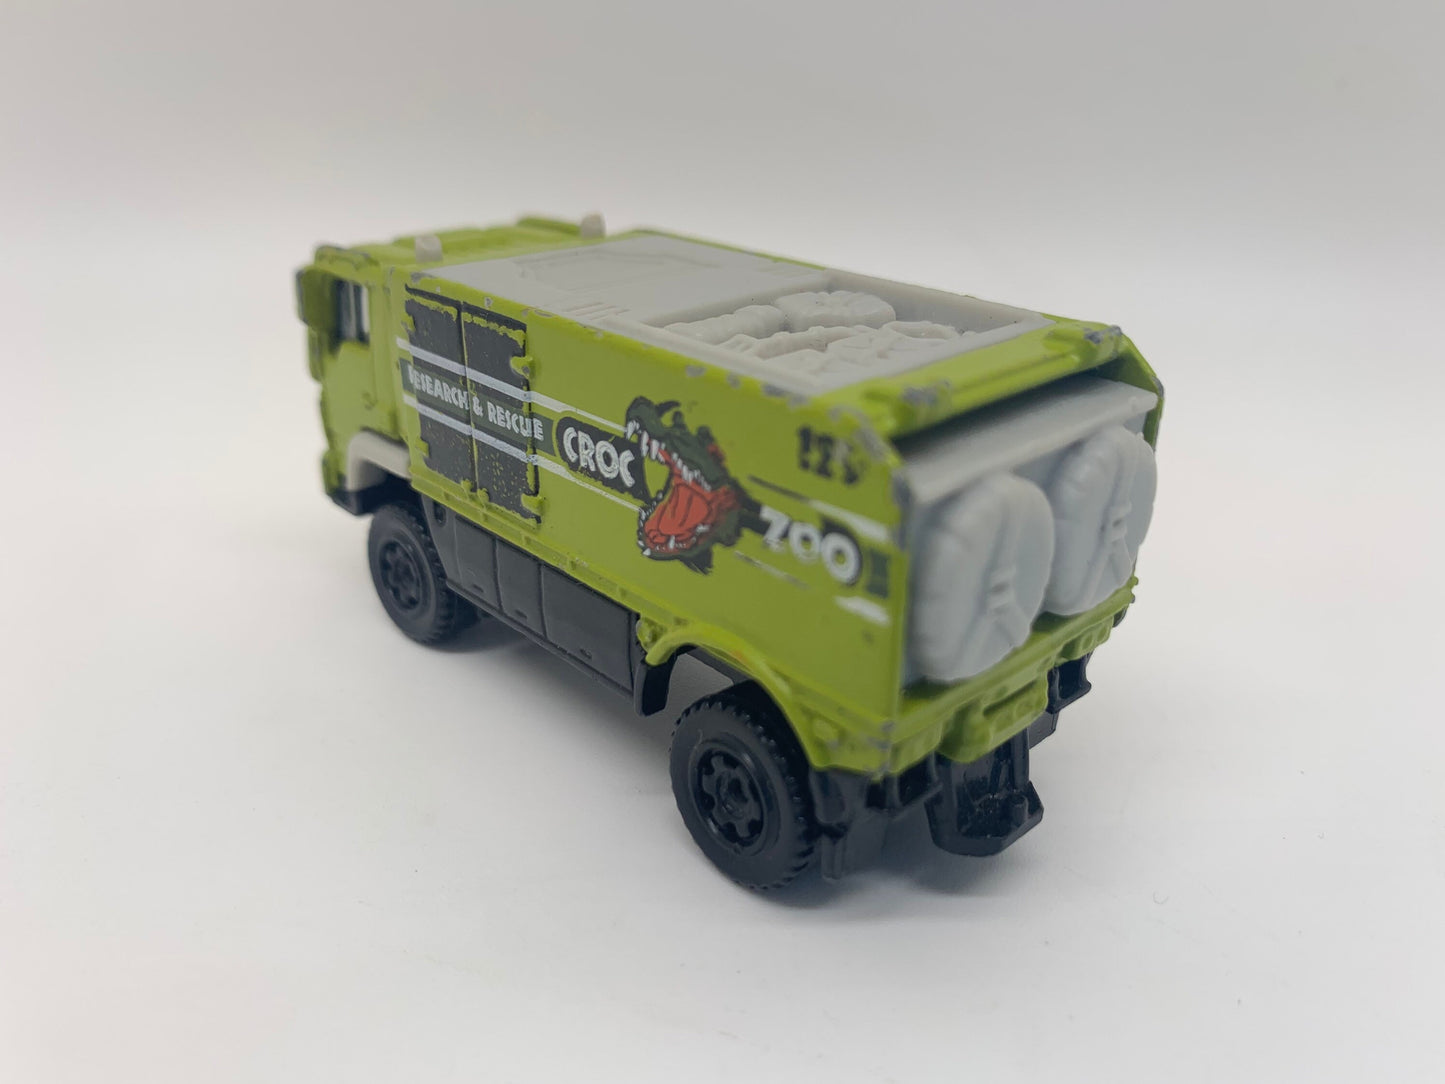 Matchbox CROC ZOO Desert Thunder V16 green